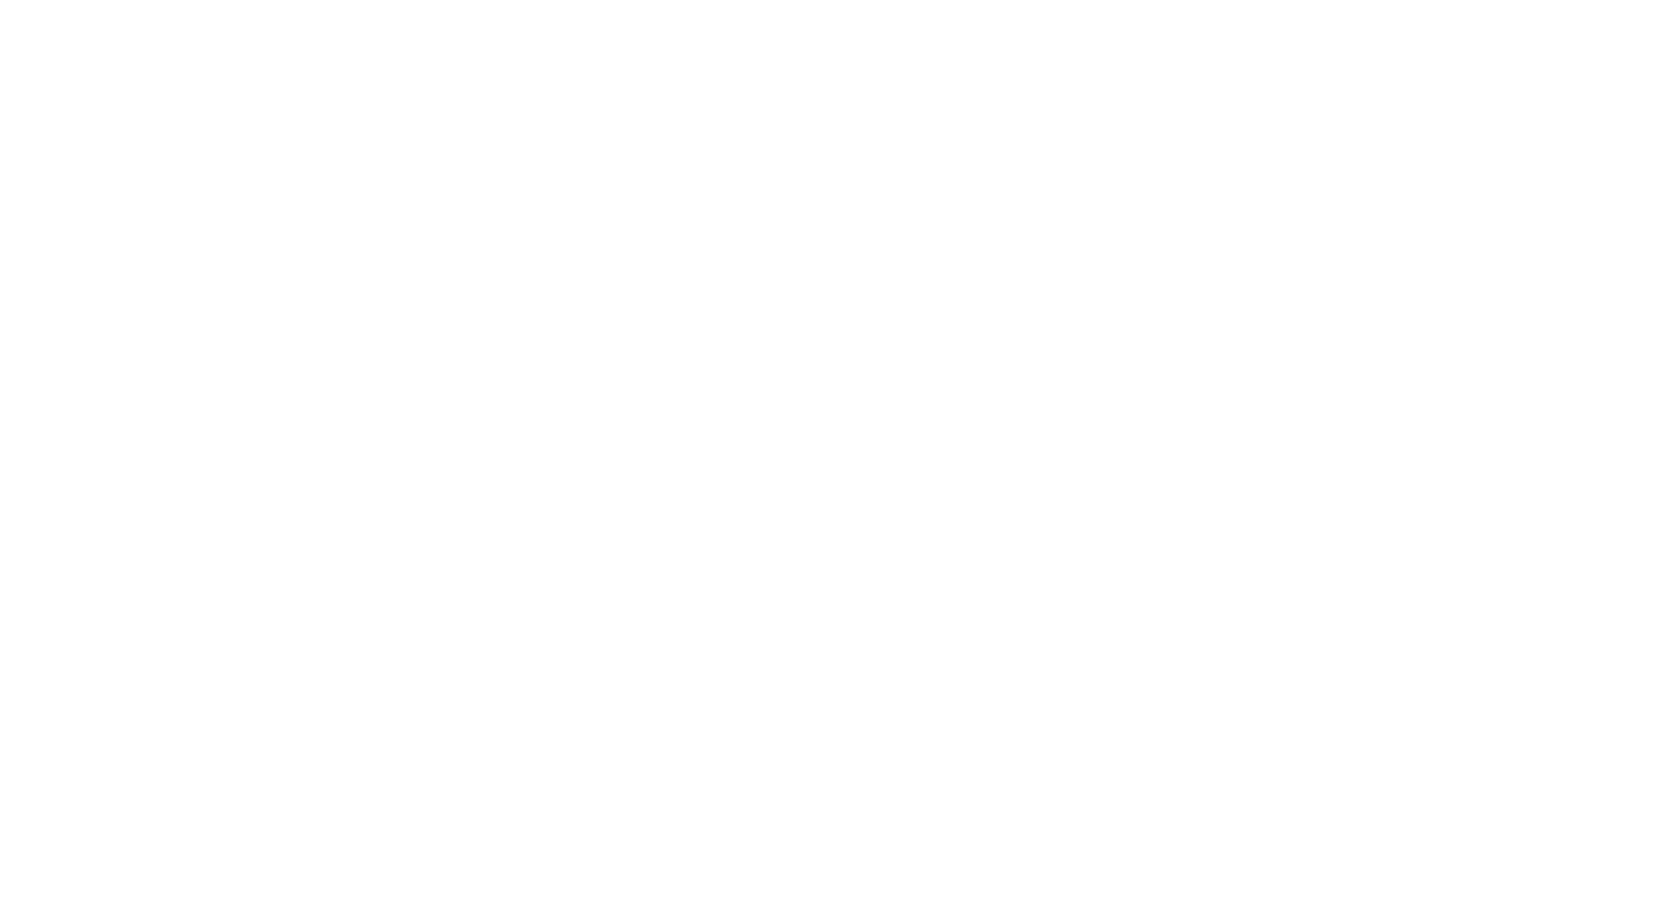 Кейс сервиса BRANDNATION - Фирменный стиль грузинского ресторана. Брендинговое агентство BRANDNATION в Москве и Санкт-Петербурге. Услуги: разработка логотипа и фирменного стиля, дизайн упаковки, брендбук, ребрендинг, разработка сайта.